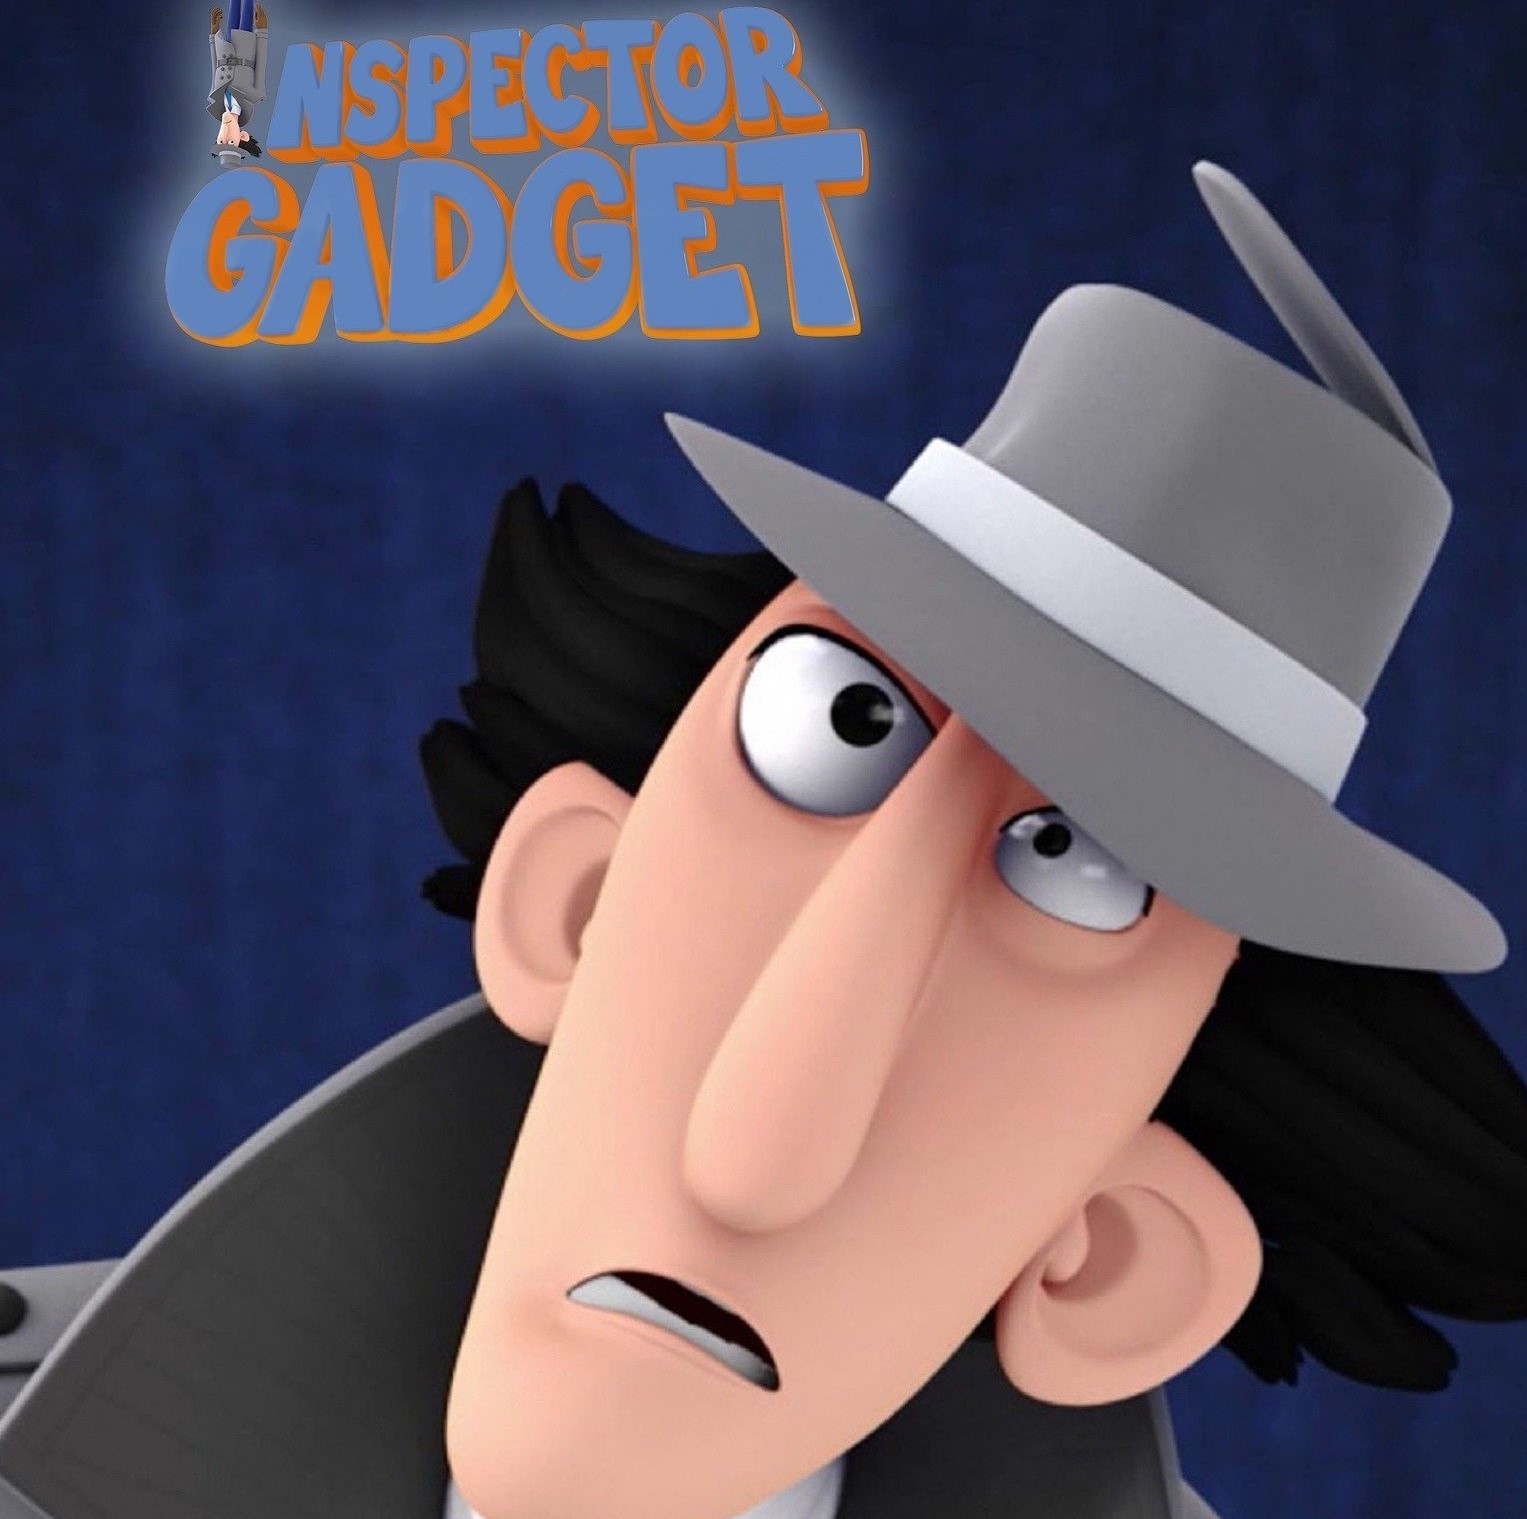 19 Facts About Inspector Gadget (Inspector Gadget) - Facts.net